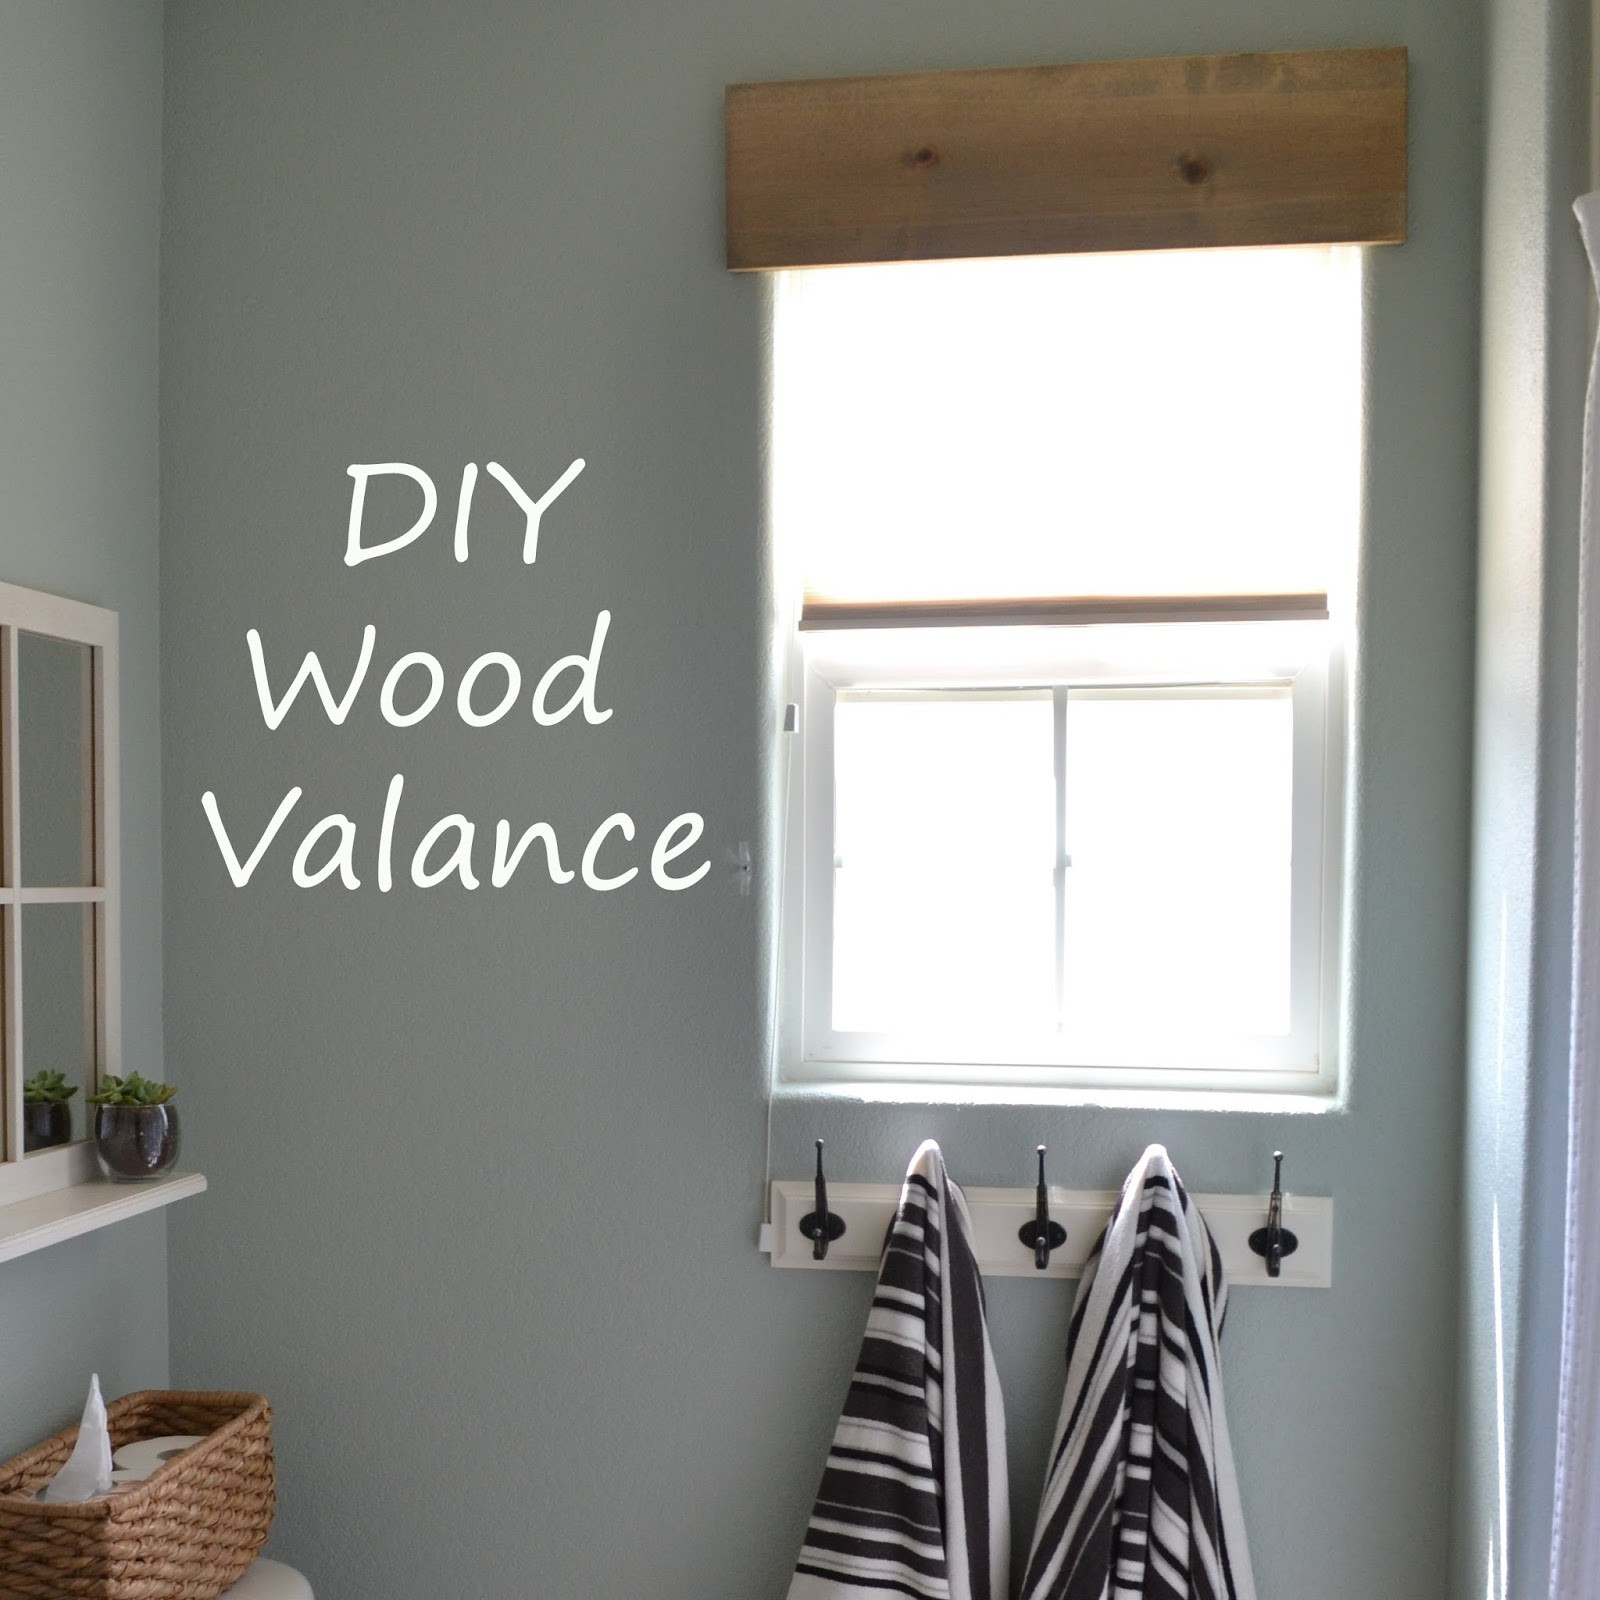 DIY Wood Valance
 Making Wood Valance Plans DIY Free Download platform bed